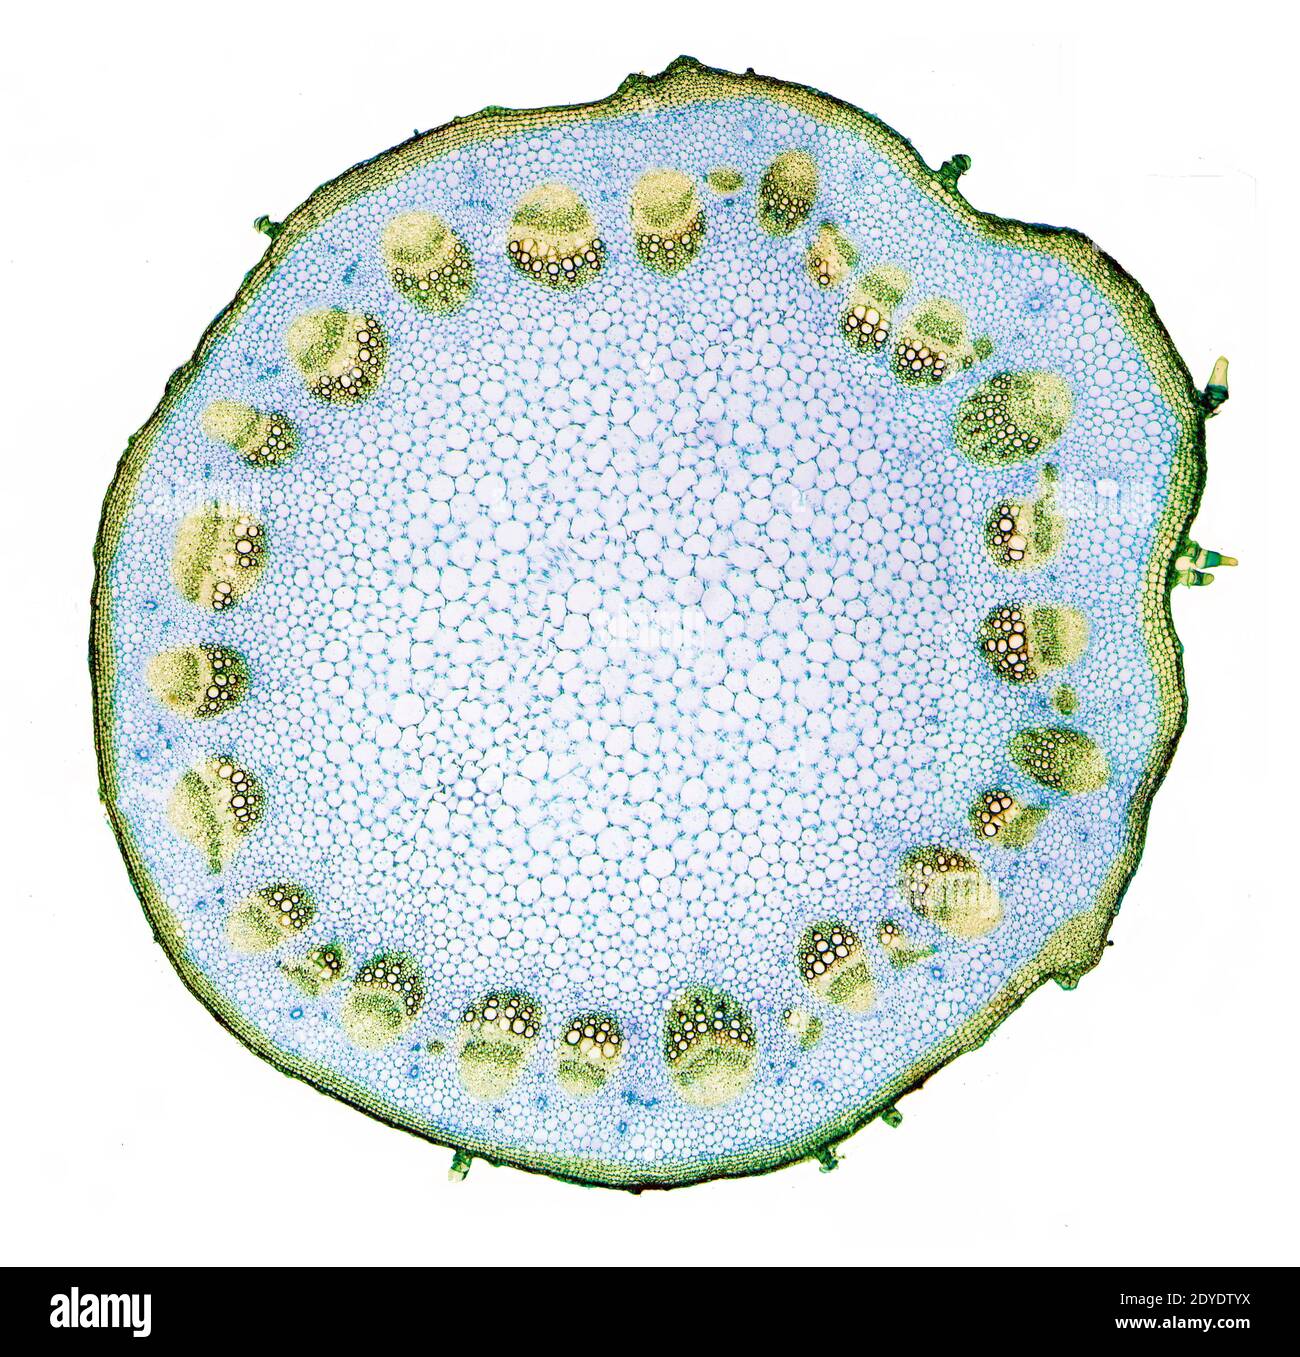 Helianthus-Stamm. Leichte Mikrographie (LM) des Stammes einer mehrjährigen Sonnenblume (Helianthus sp.). Stockfoto